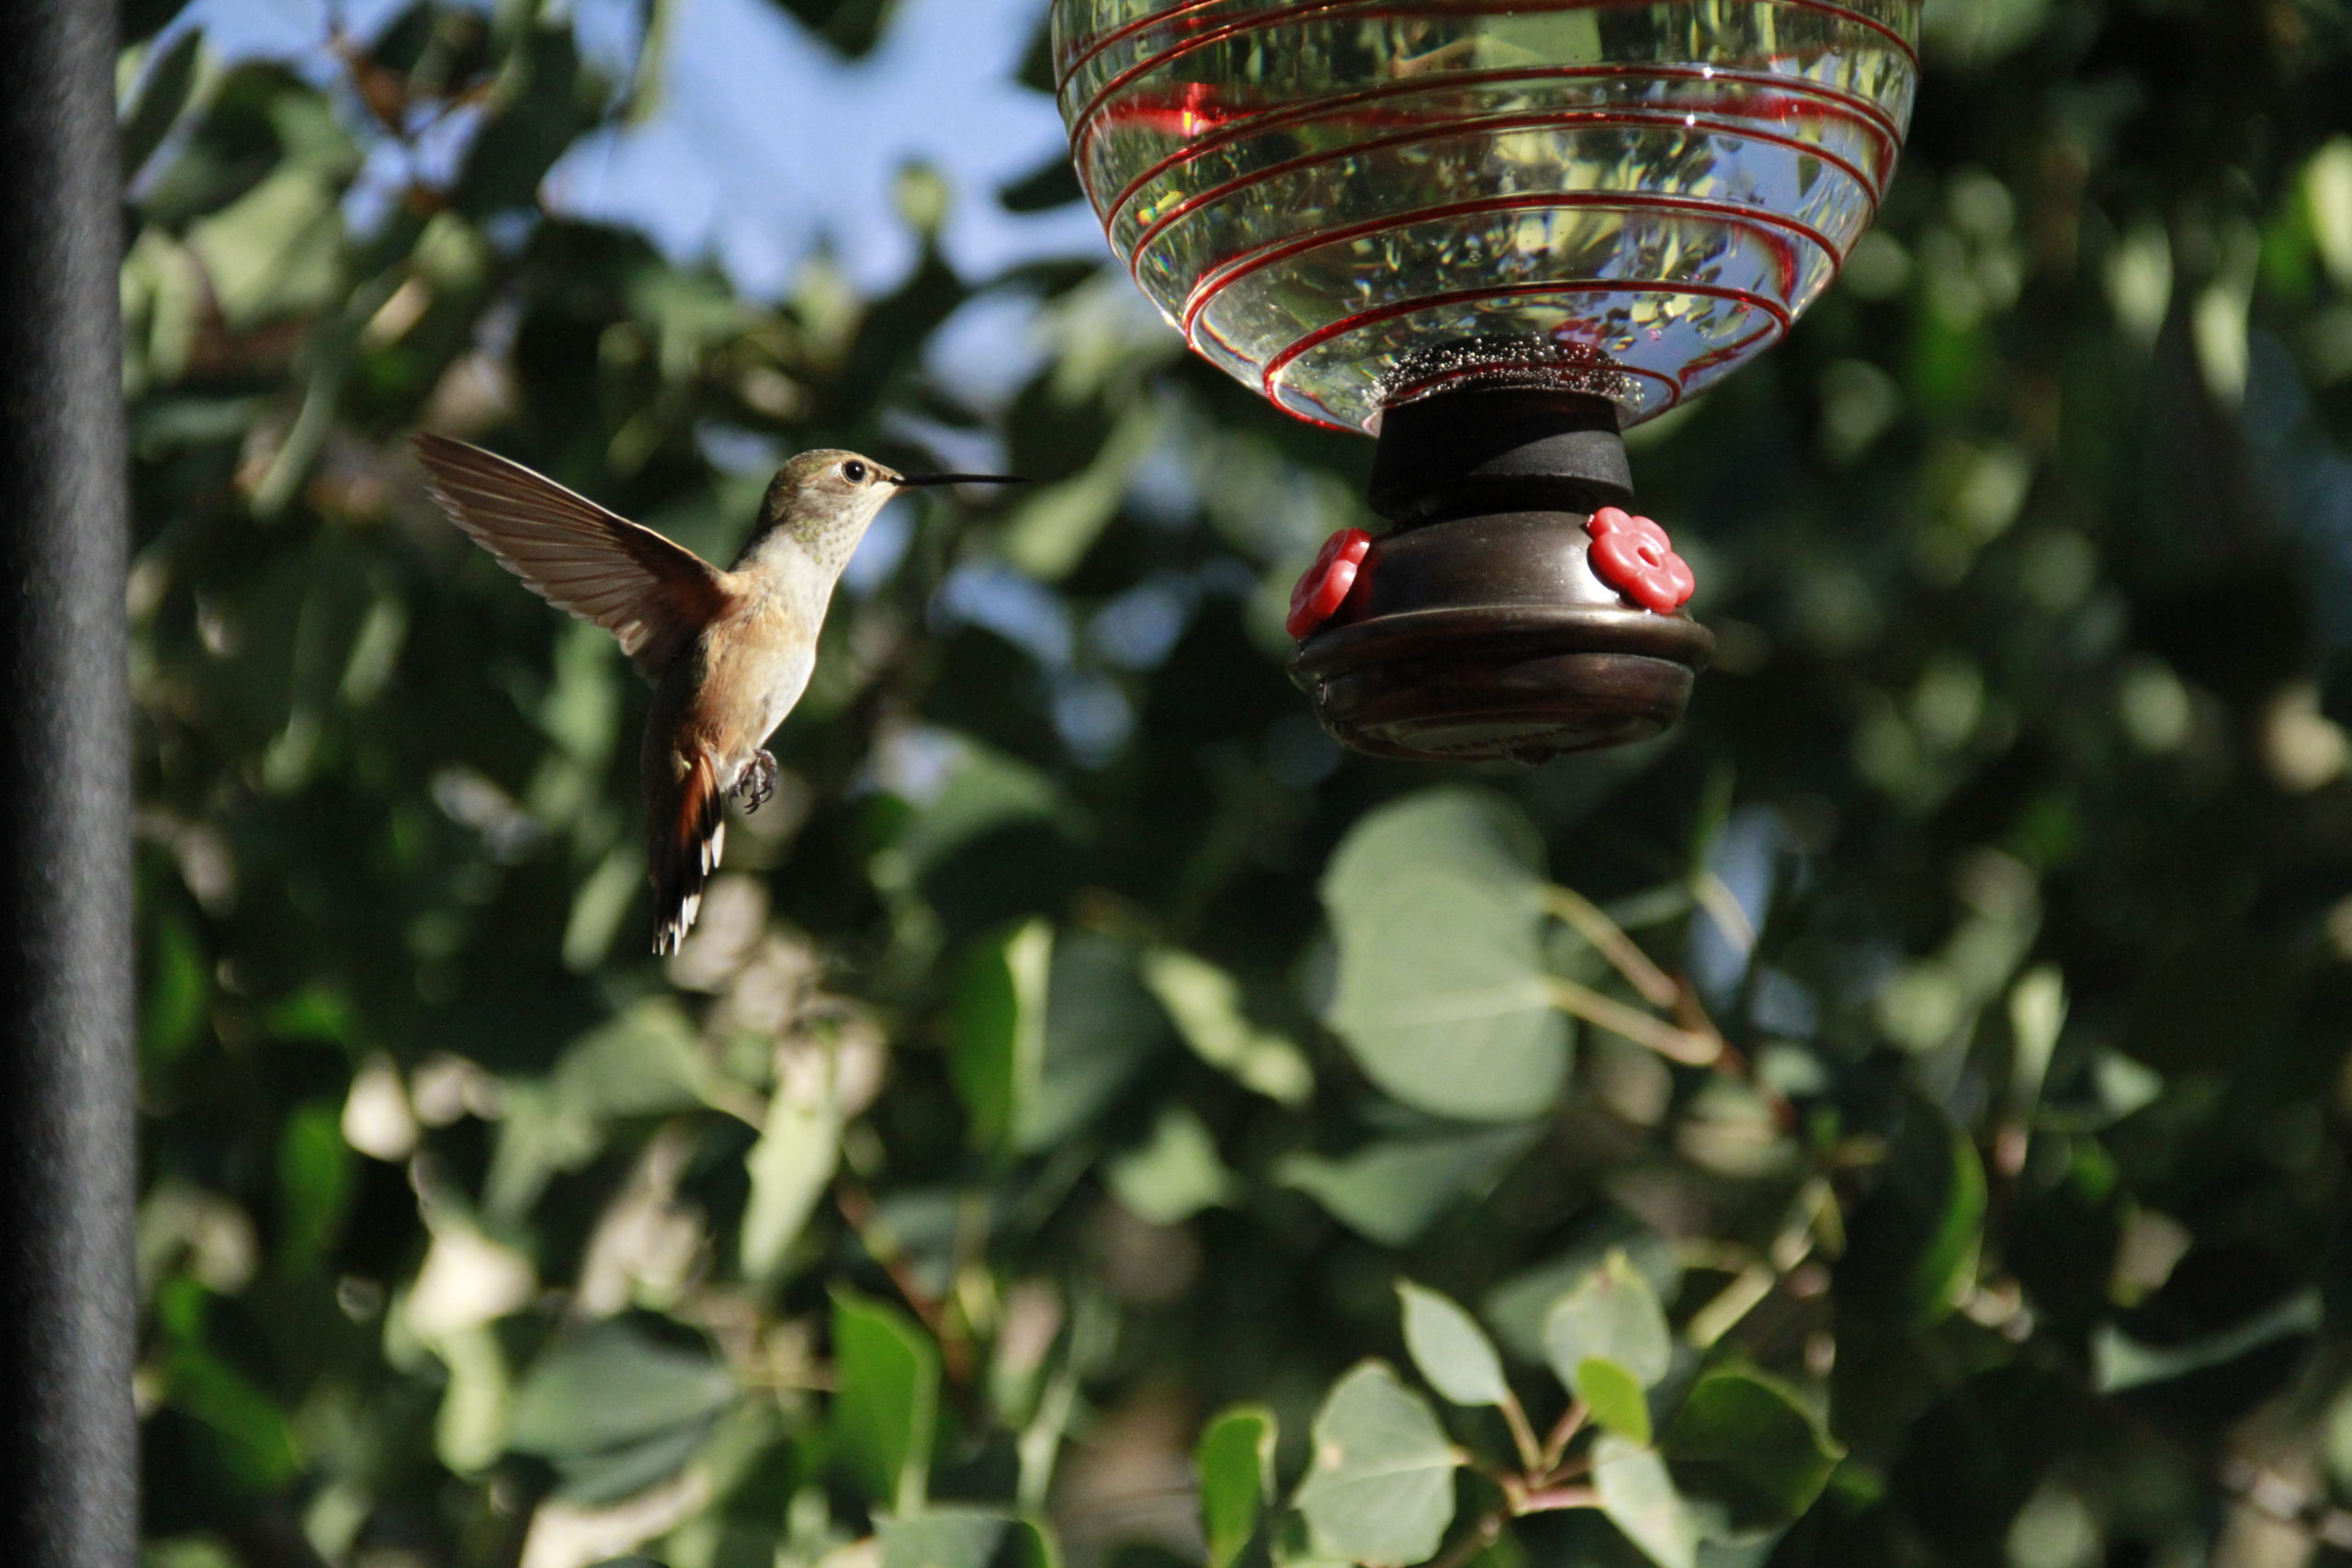 Hummingbird-006-סקיילד הוממינגבירד עדיטיד מיט באַג פון טריקס אַקשאַנז